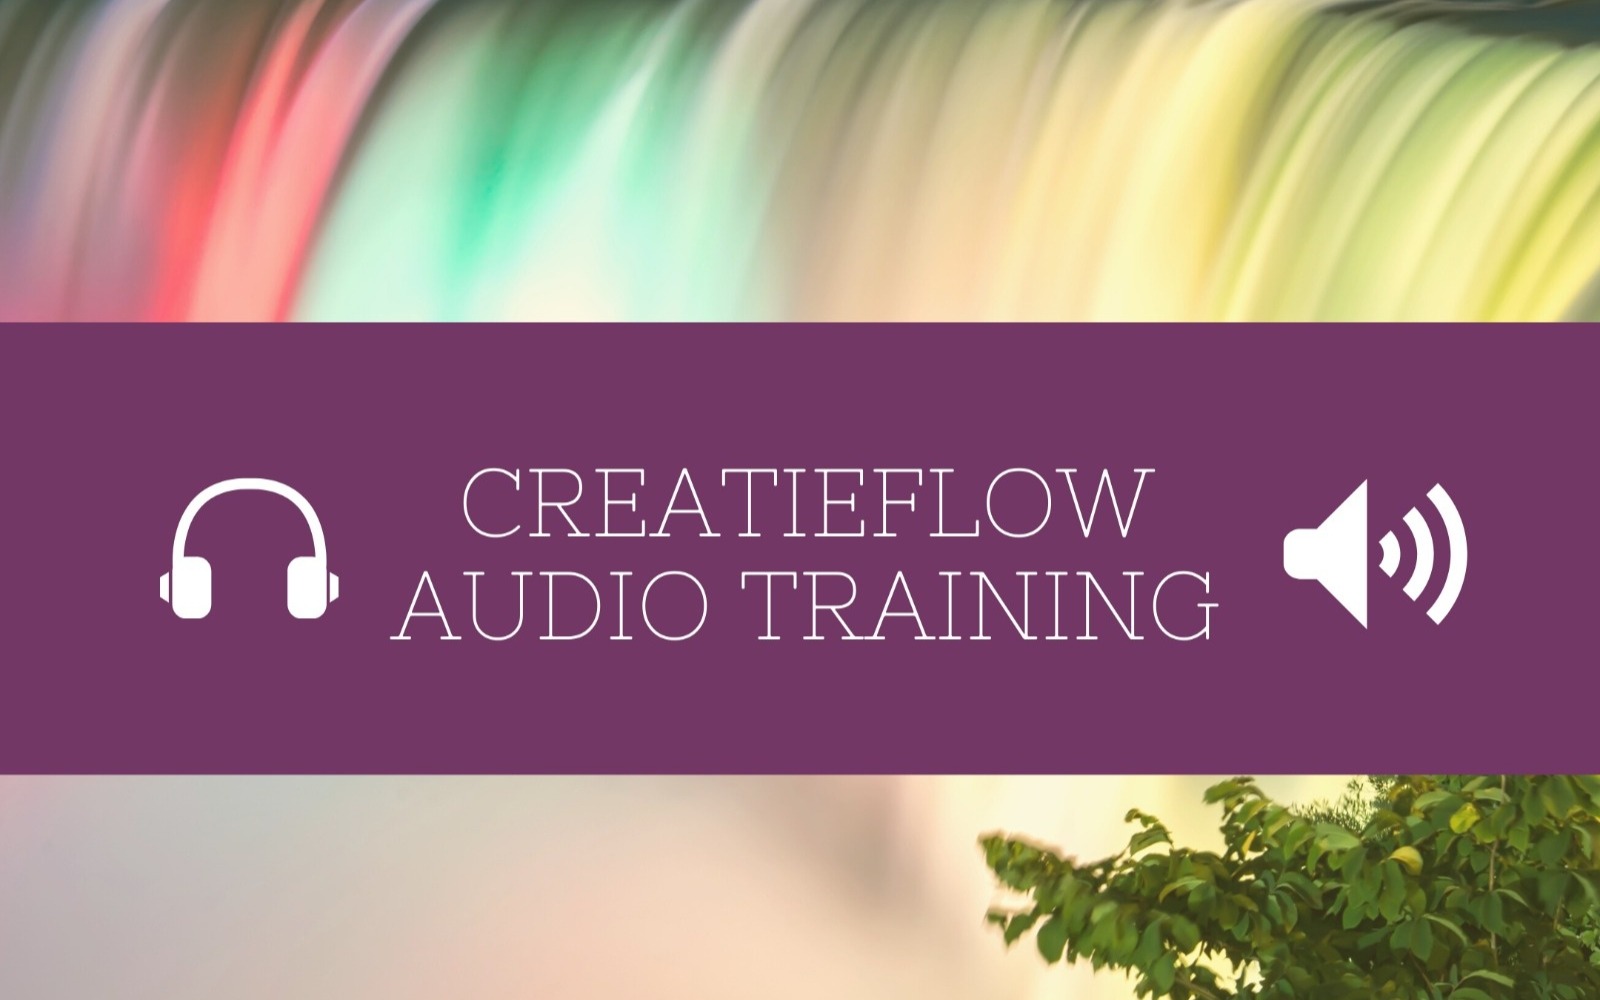 Audio training 1600 x 1000